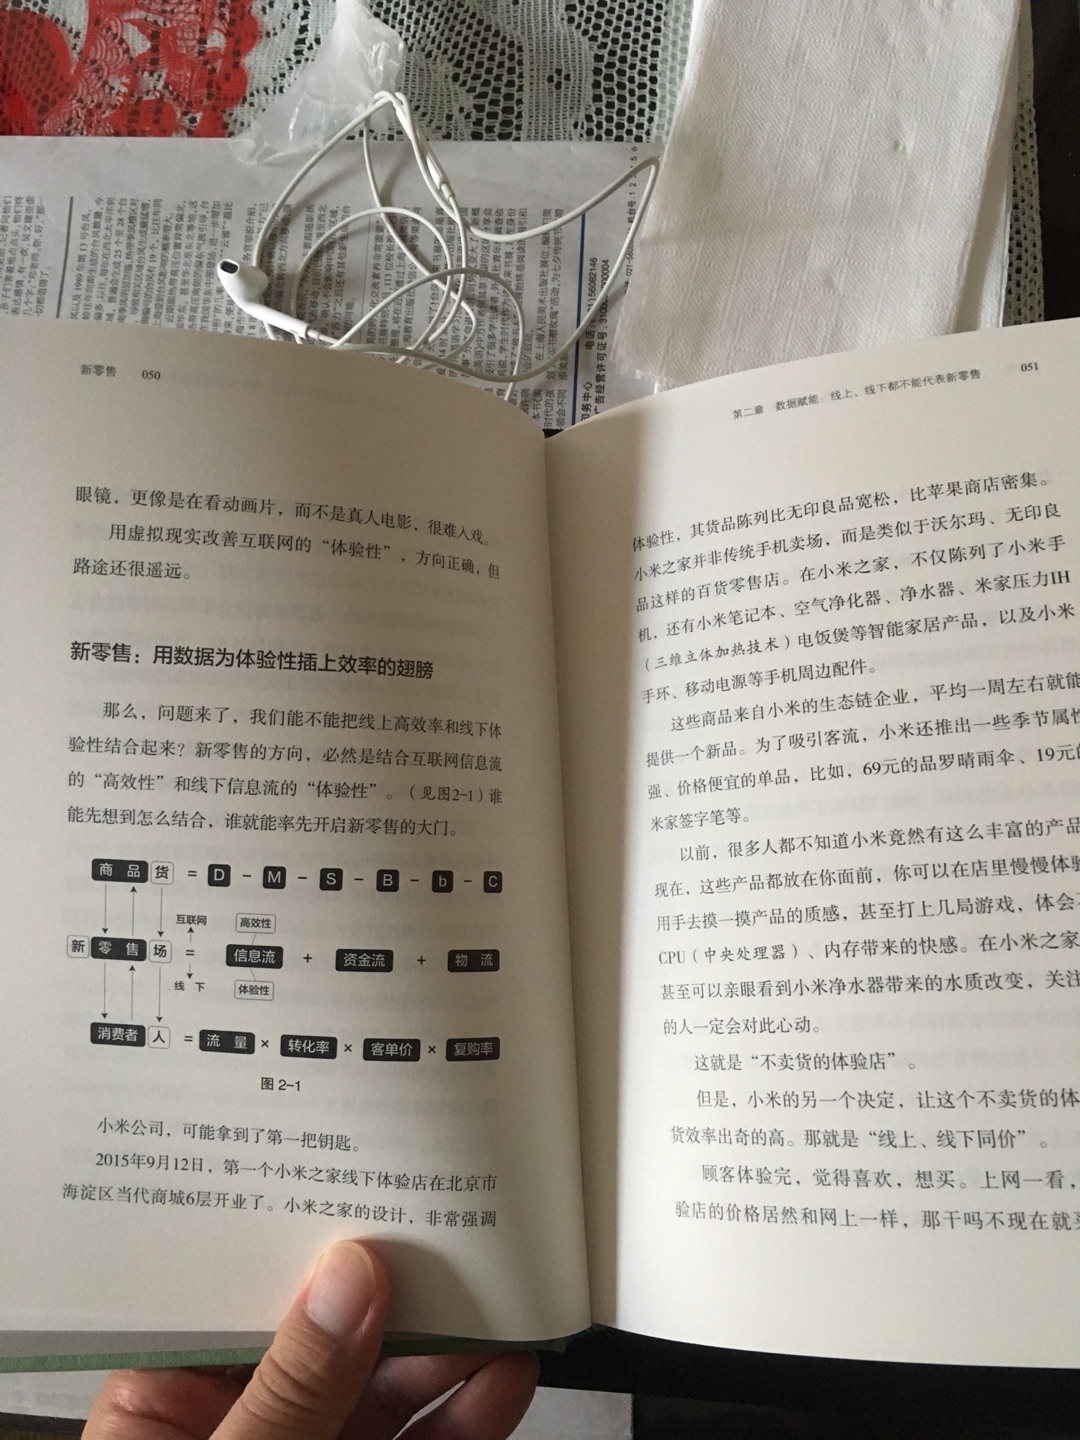 刘润老师的书出一本买一本  可惜稍晚一点  没有买到签名本  以后见面让老师签